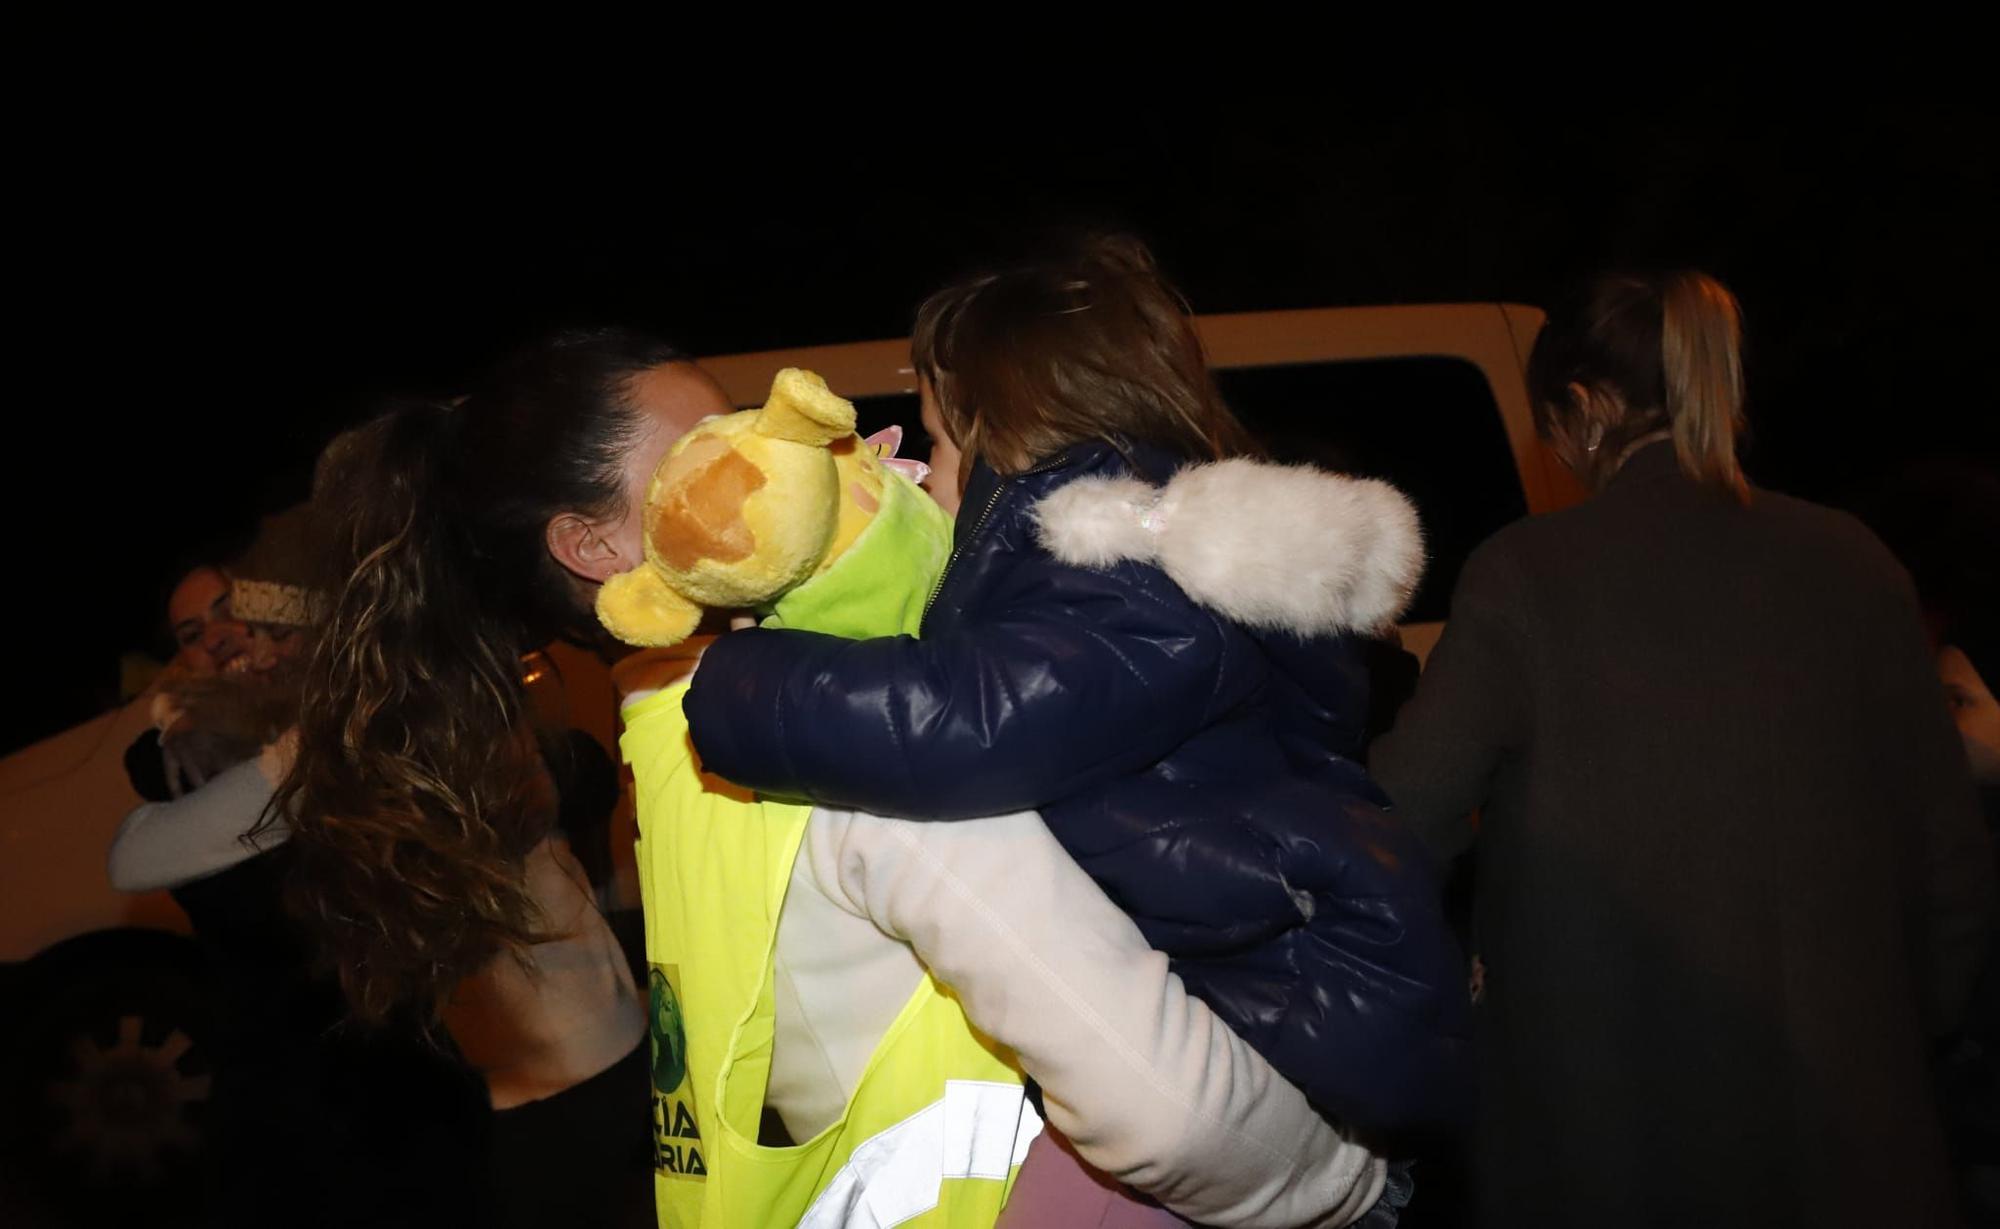 La caravana humanitaria de Policía Solidaria llega a Zaragoza con 18 menores y cuatro adultos